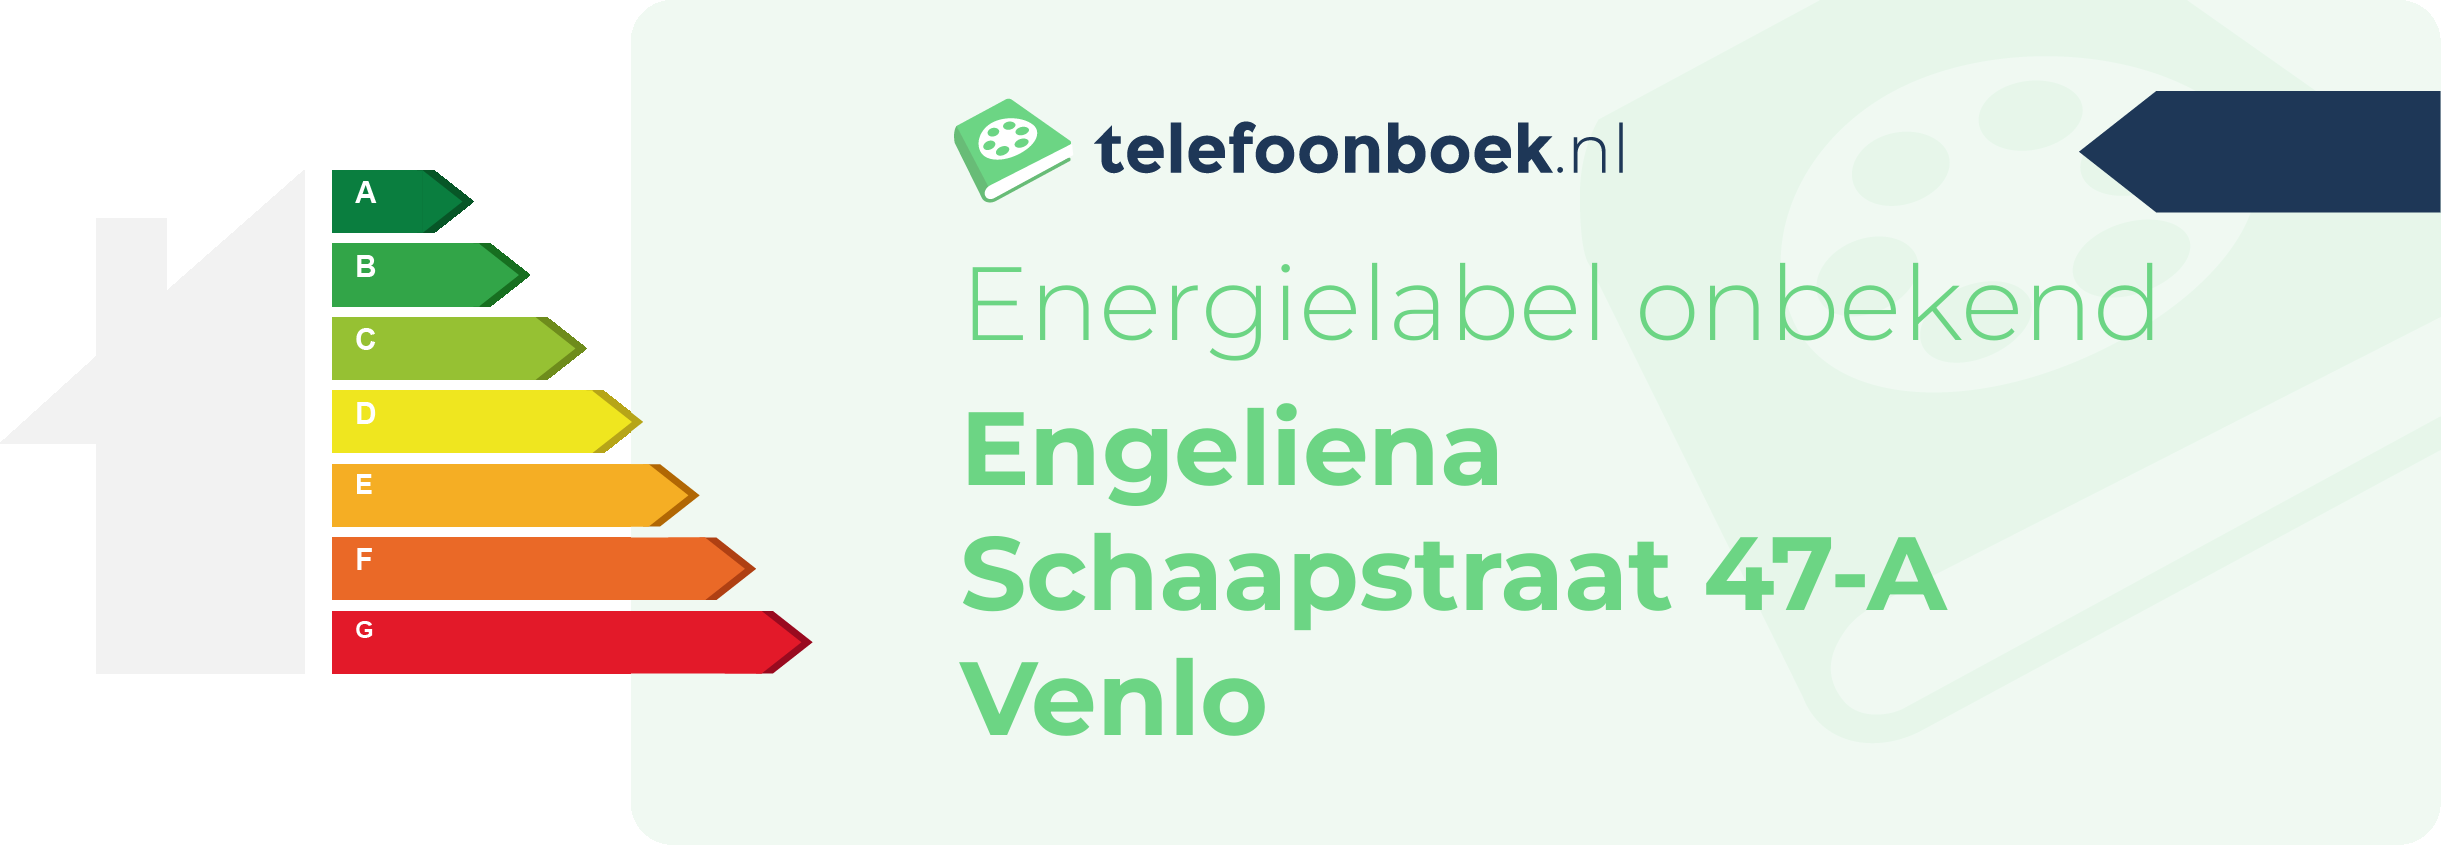 Energielabel Engeliena Schaapstraat 47-A Venlo